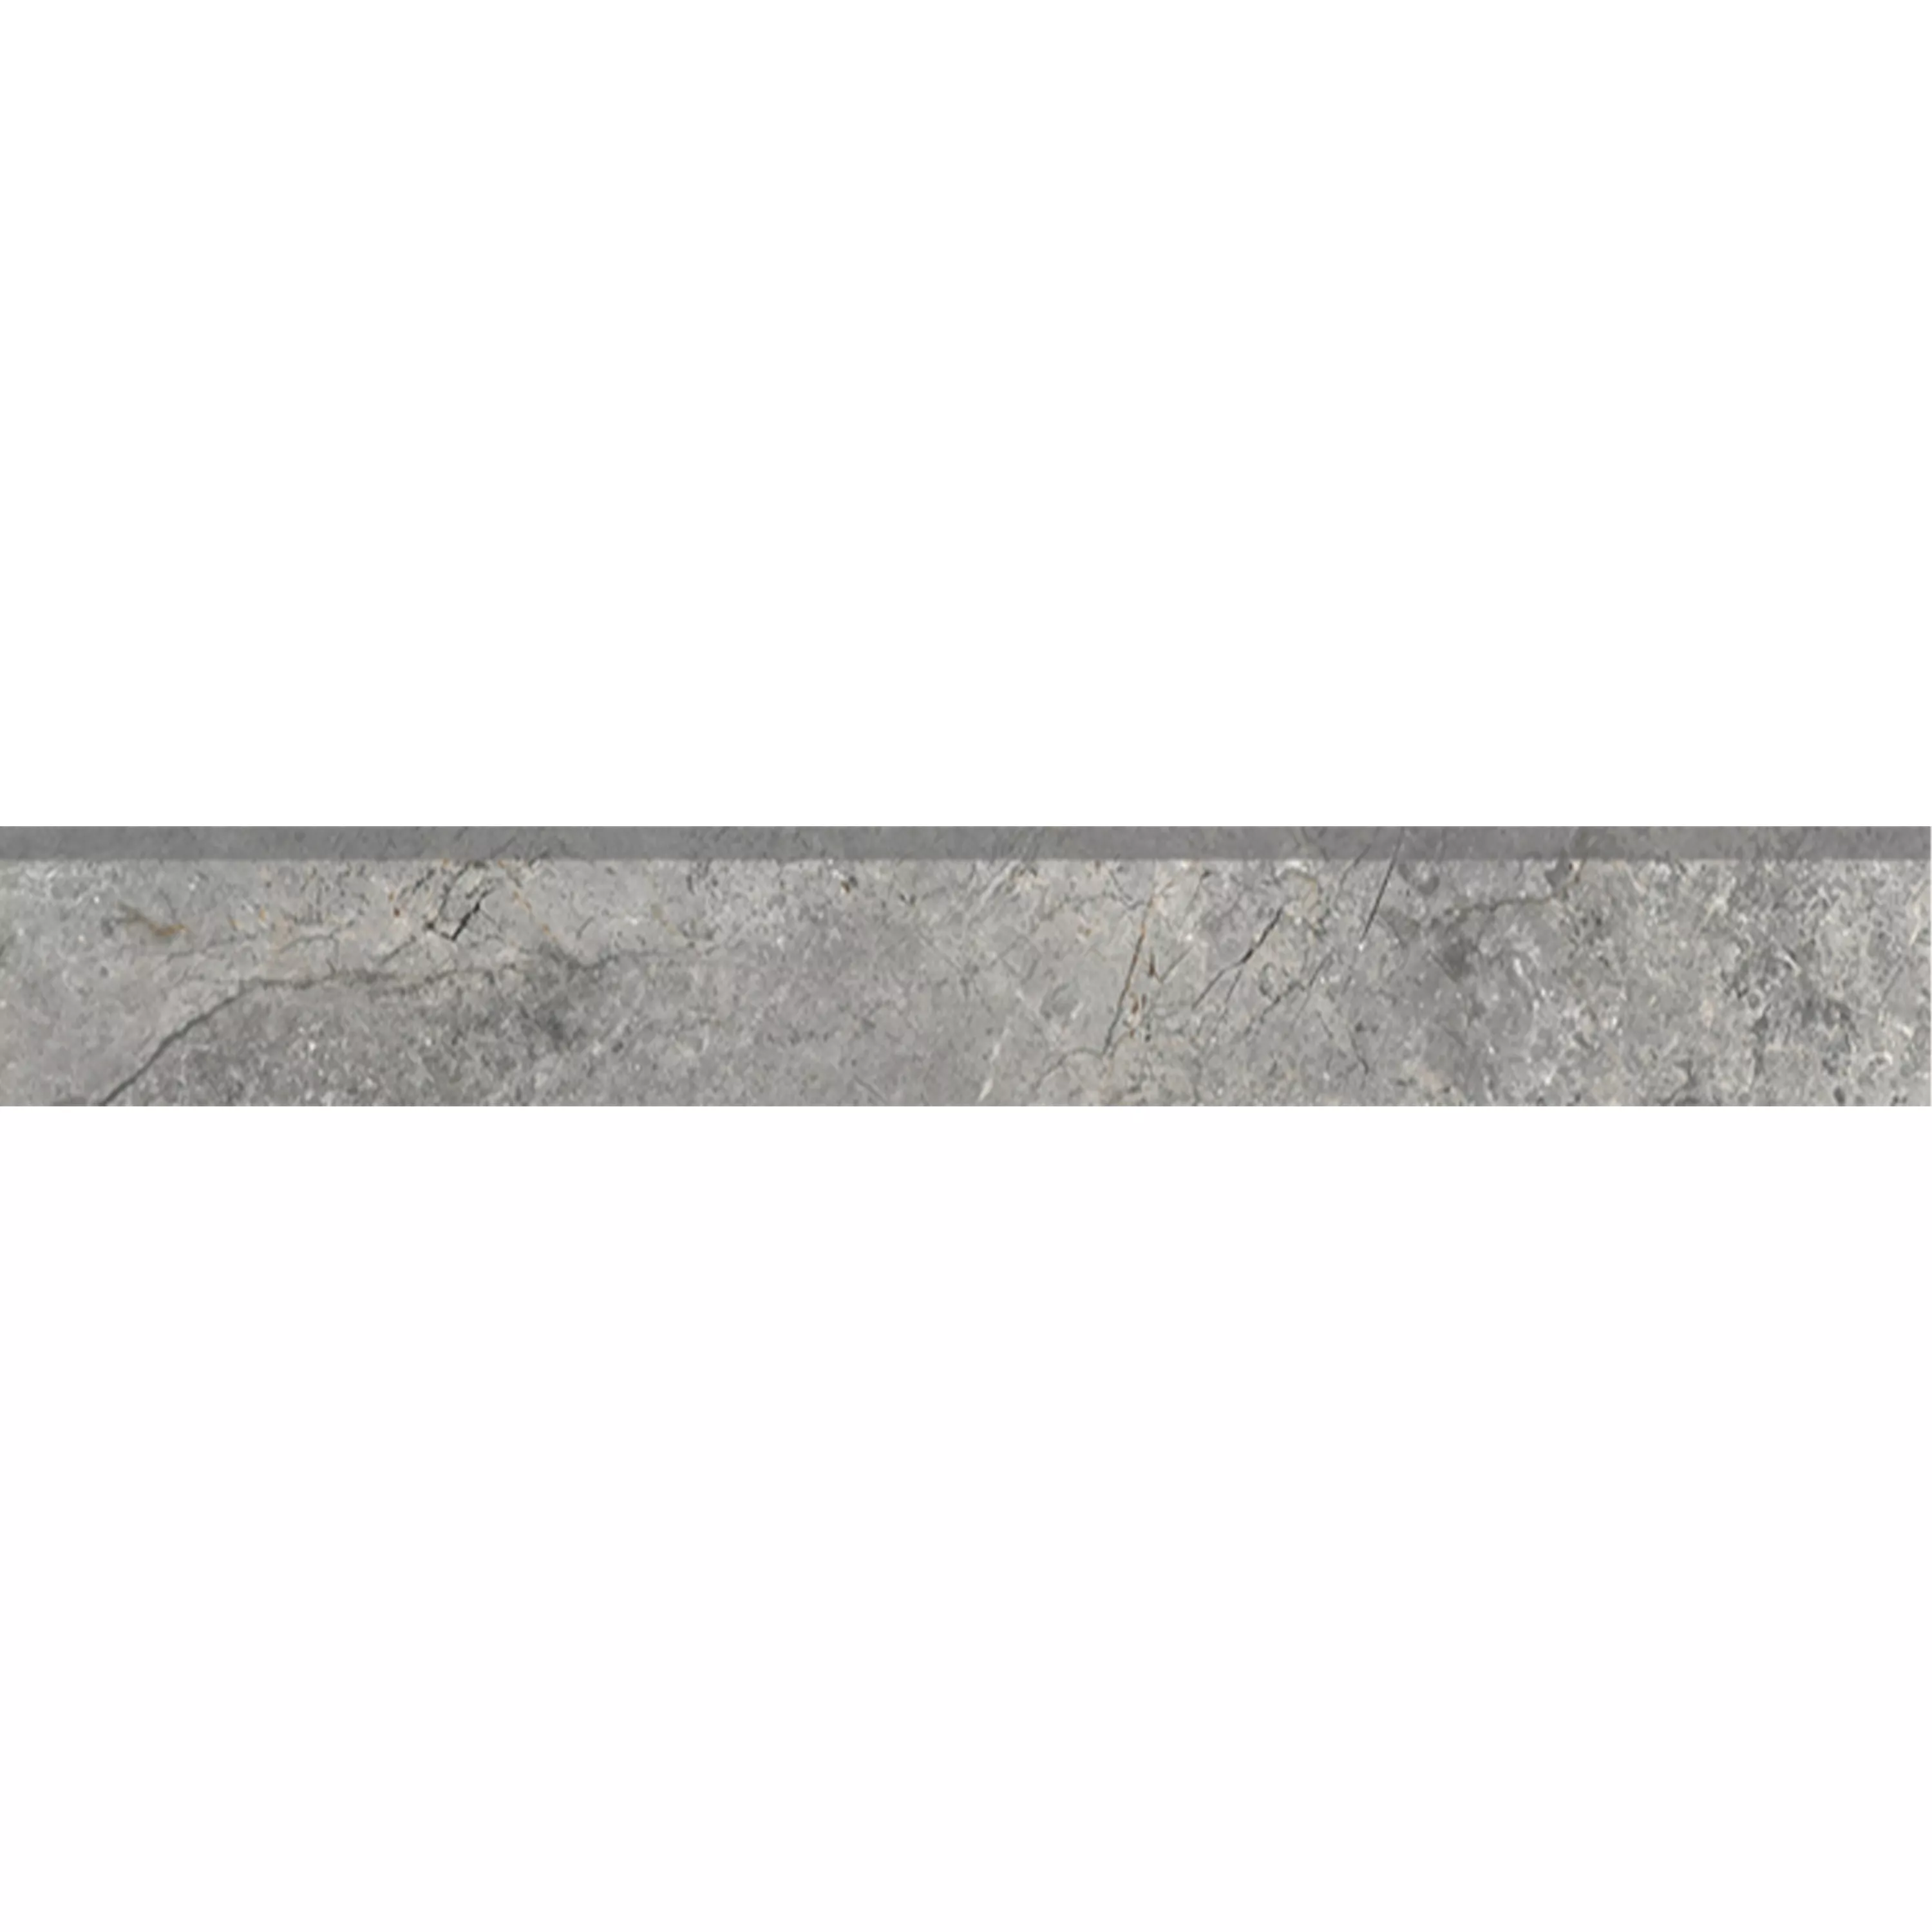 Πλακάκια Δαπέδου Pangea Μαρμάρινη Όψη Παγωμένος Γκρί Bάση 7x120cm